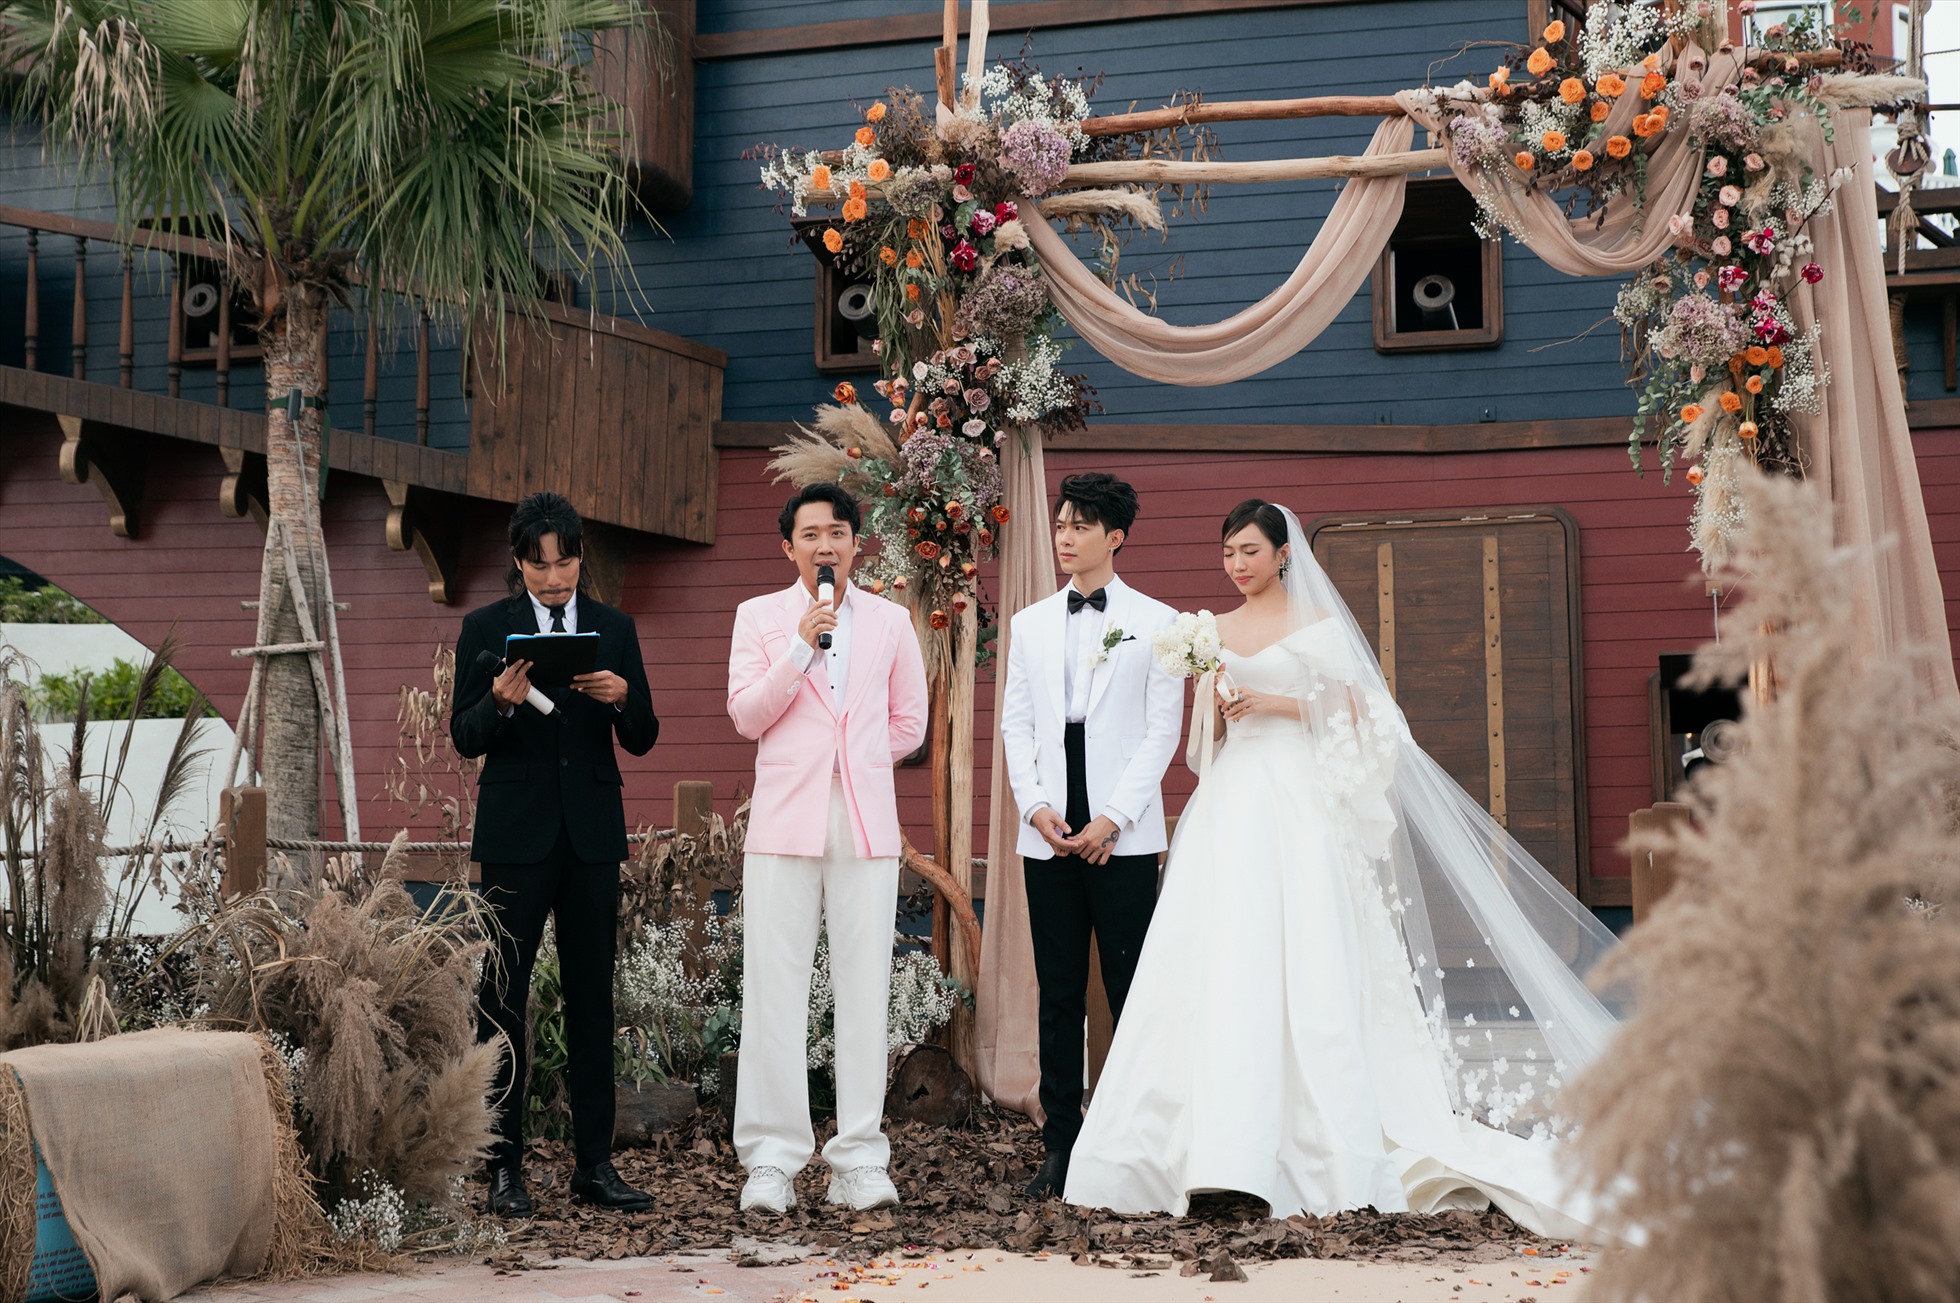 Diệu Nhi và Anh Tú bật khóc trong đám cưới, Trấn Thành dành lời chúc phúc